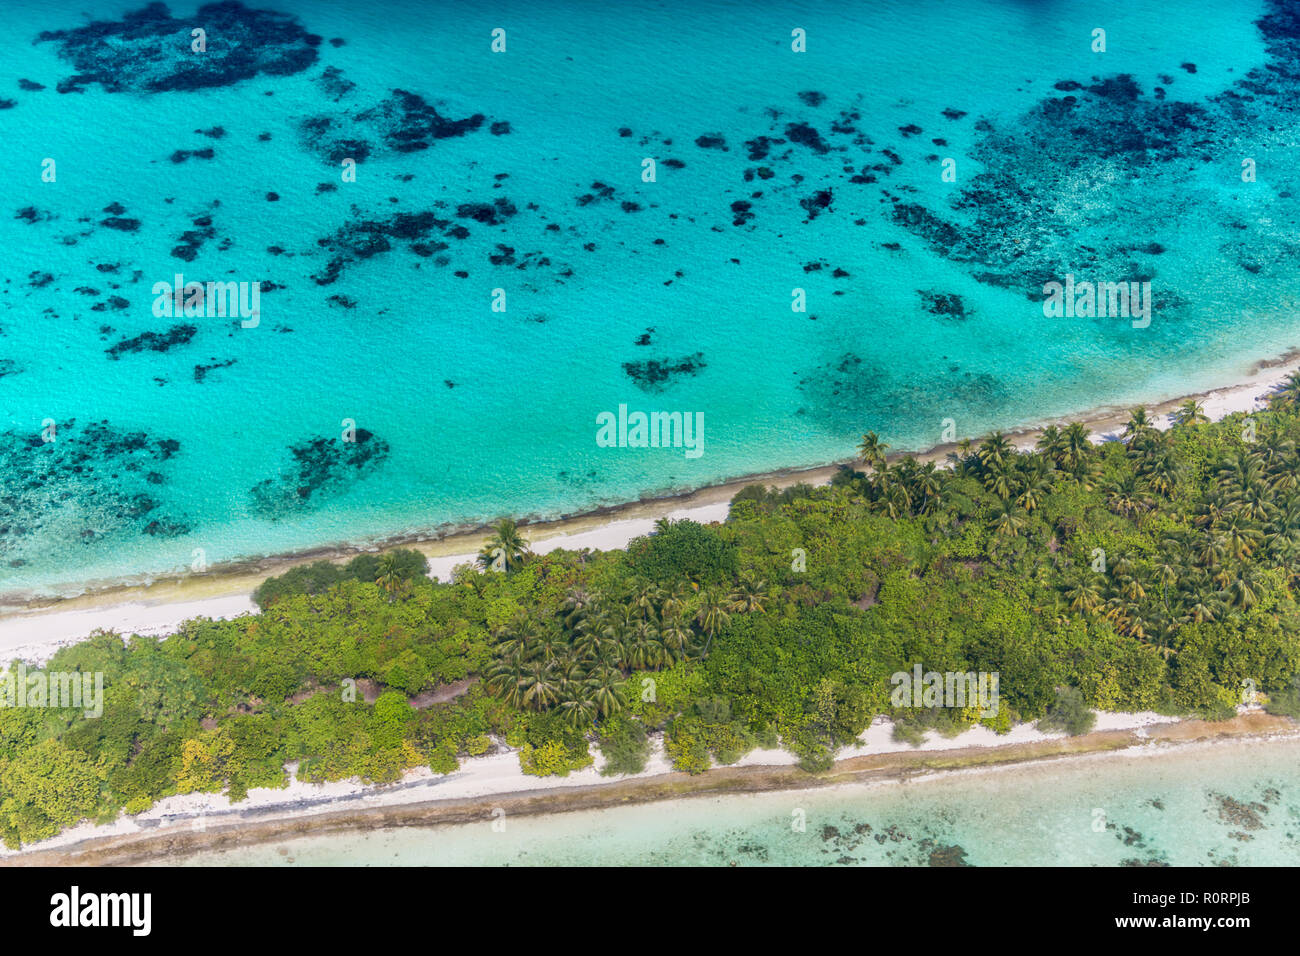 Antenne Landschaft der Malediven Insel Strand. Ruhigen tropischen Natur, Korallenriff und blaues Meer mit Sandbank. Luxus Reisen und Urlaub Konzept Stockfoto